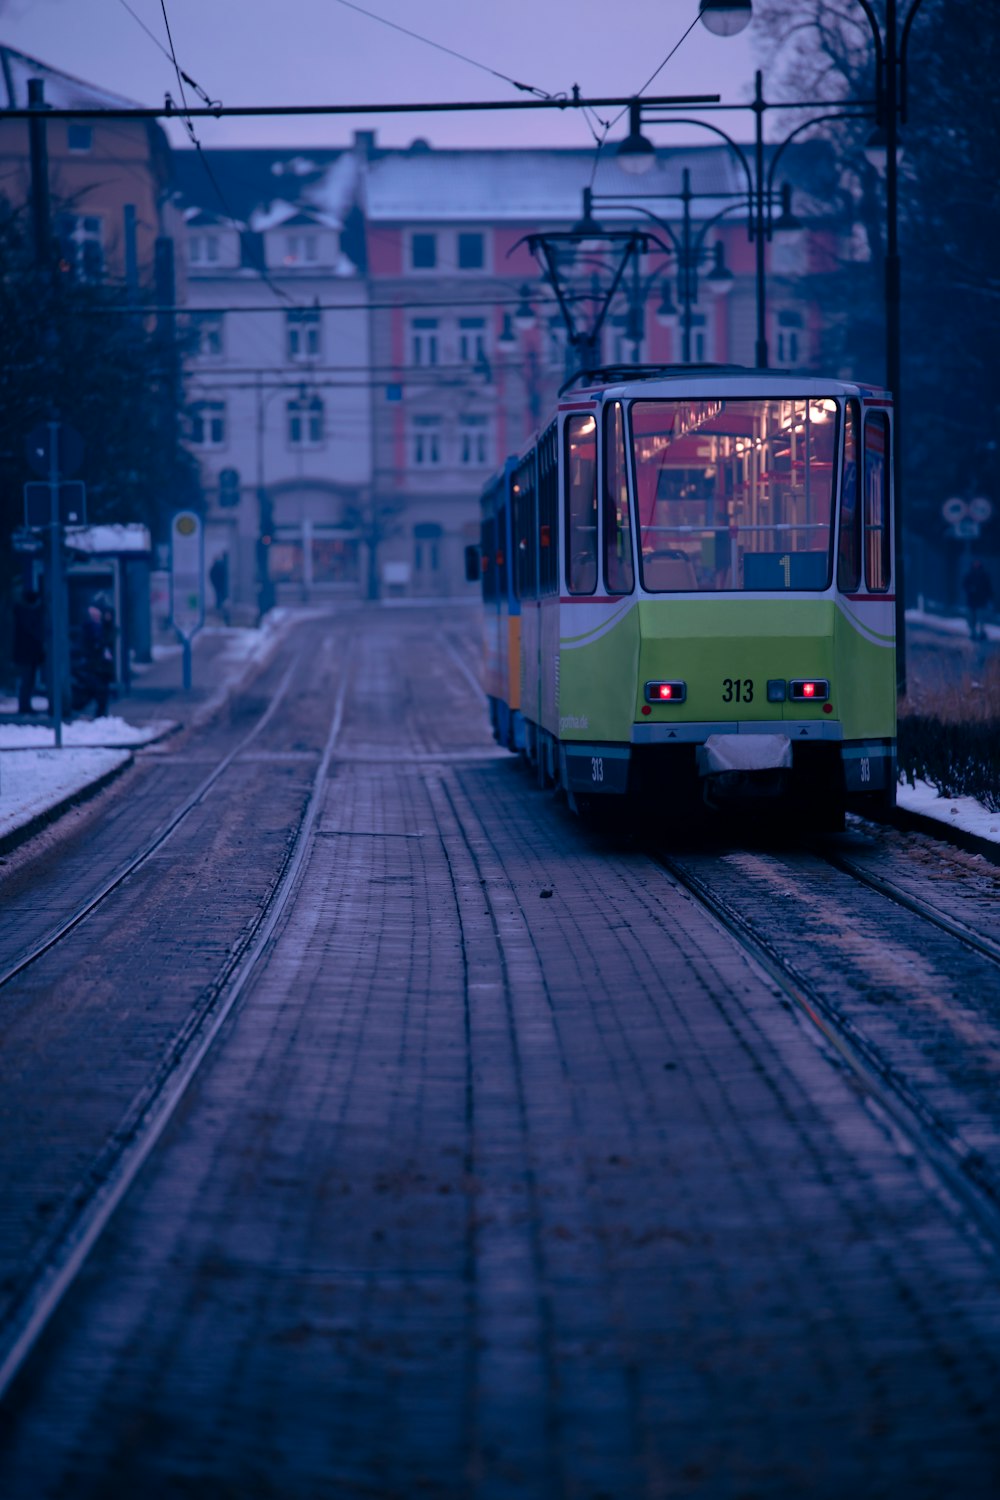 Ein grün-gelber Zug, der die Bahngleise hinunterfährt